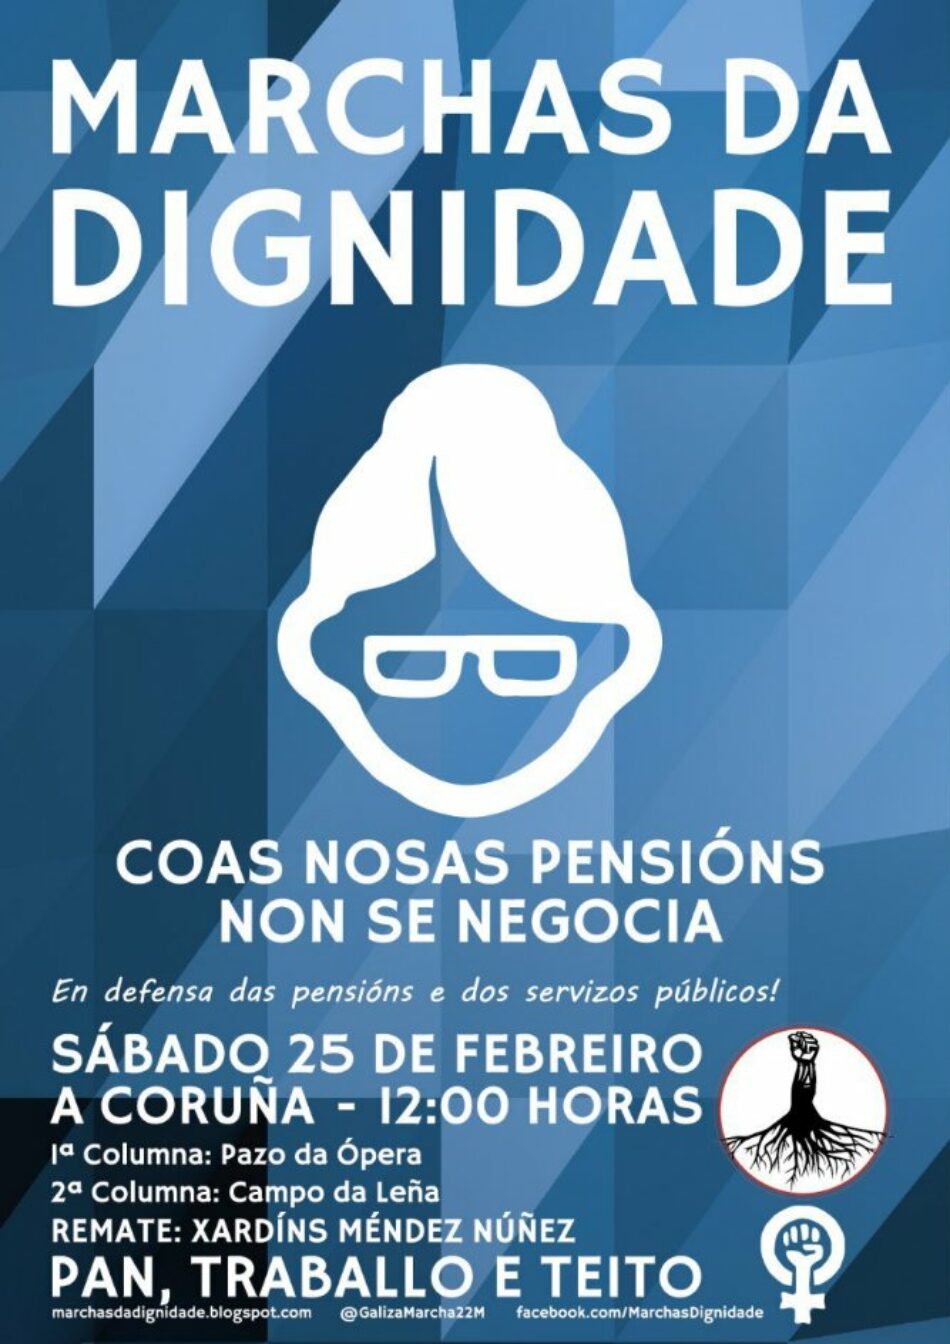 Esquerda Unida fai un chamamento á participación na mobilización das Marchas da Dignidade en defensa das pensións públicas este sábado 25 de febreiro